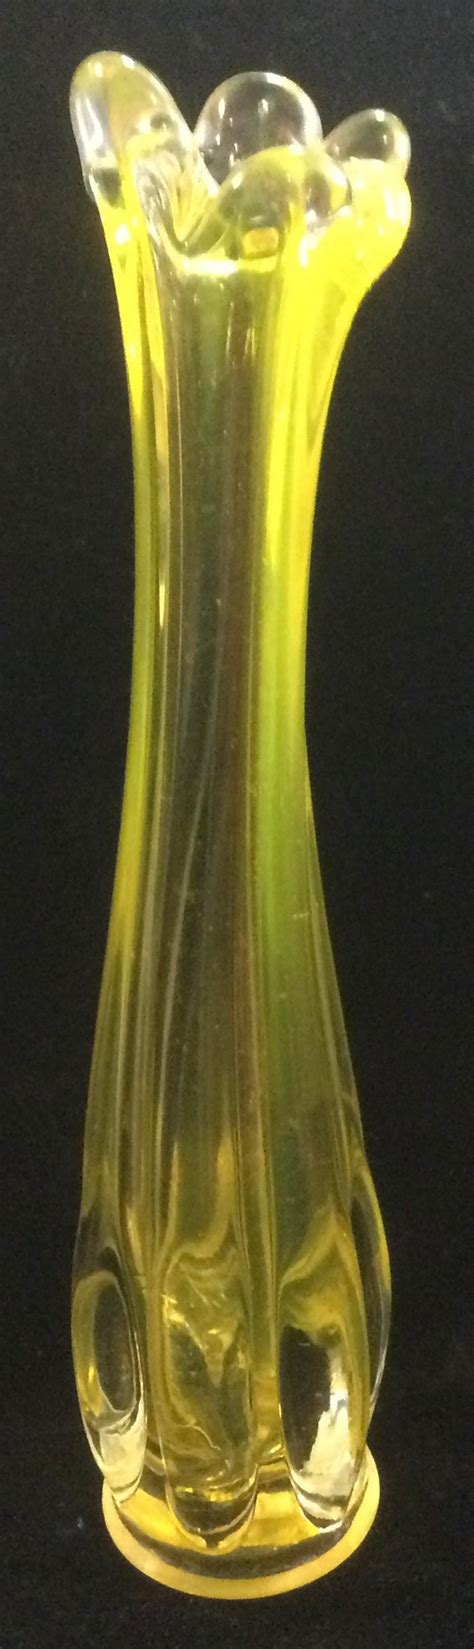 Vintage Swung Glass Vase Stretch Glass Bud Vase Yellow Etsy